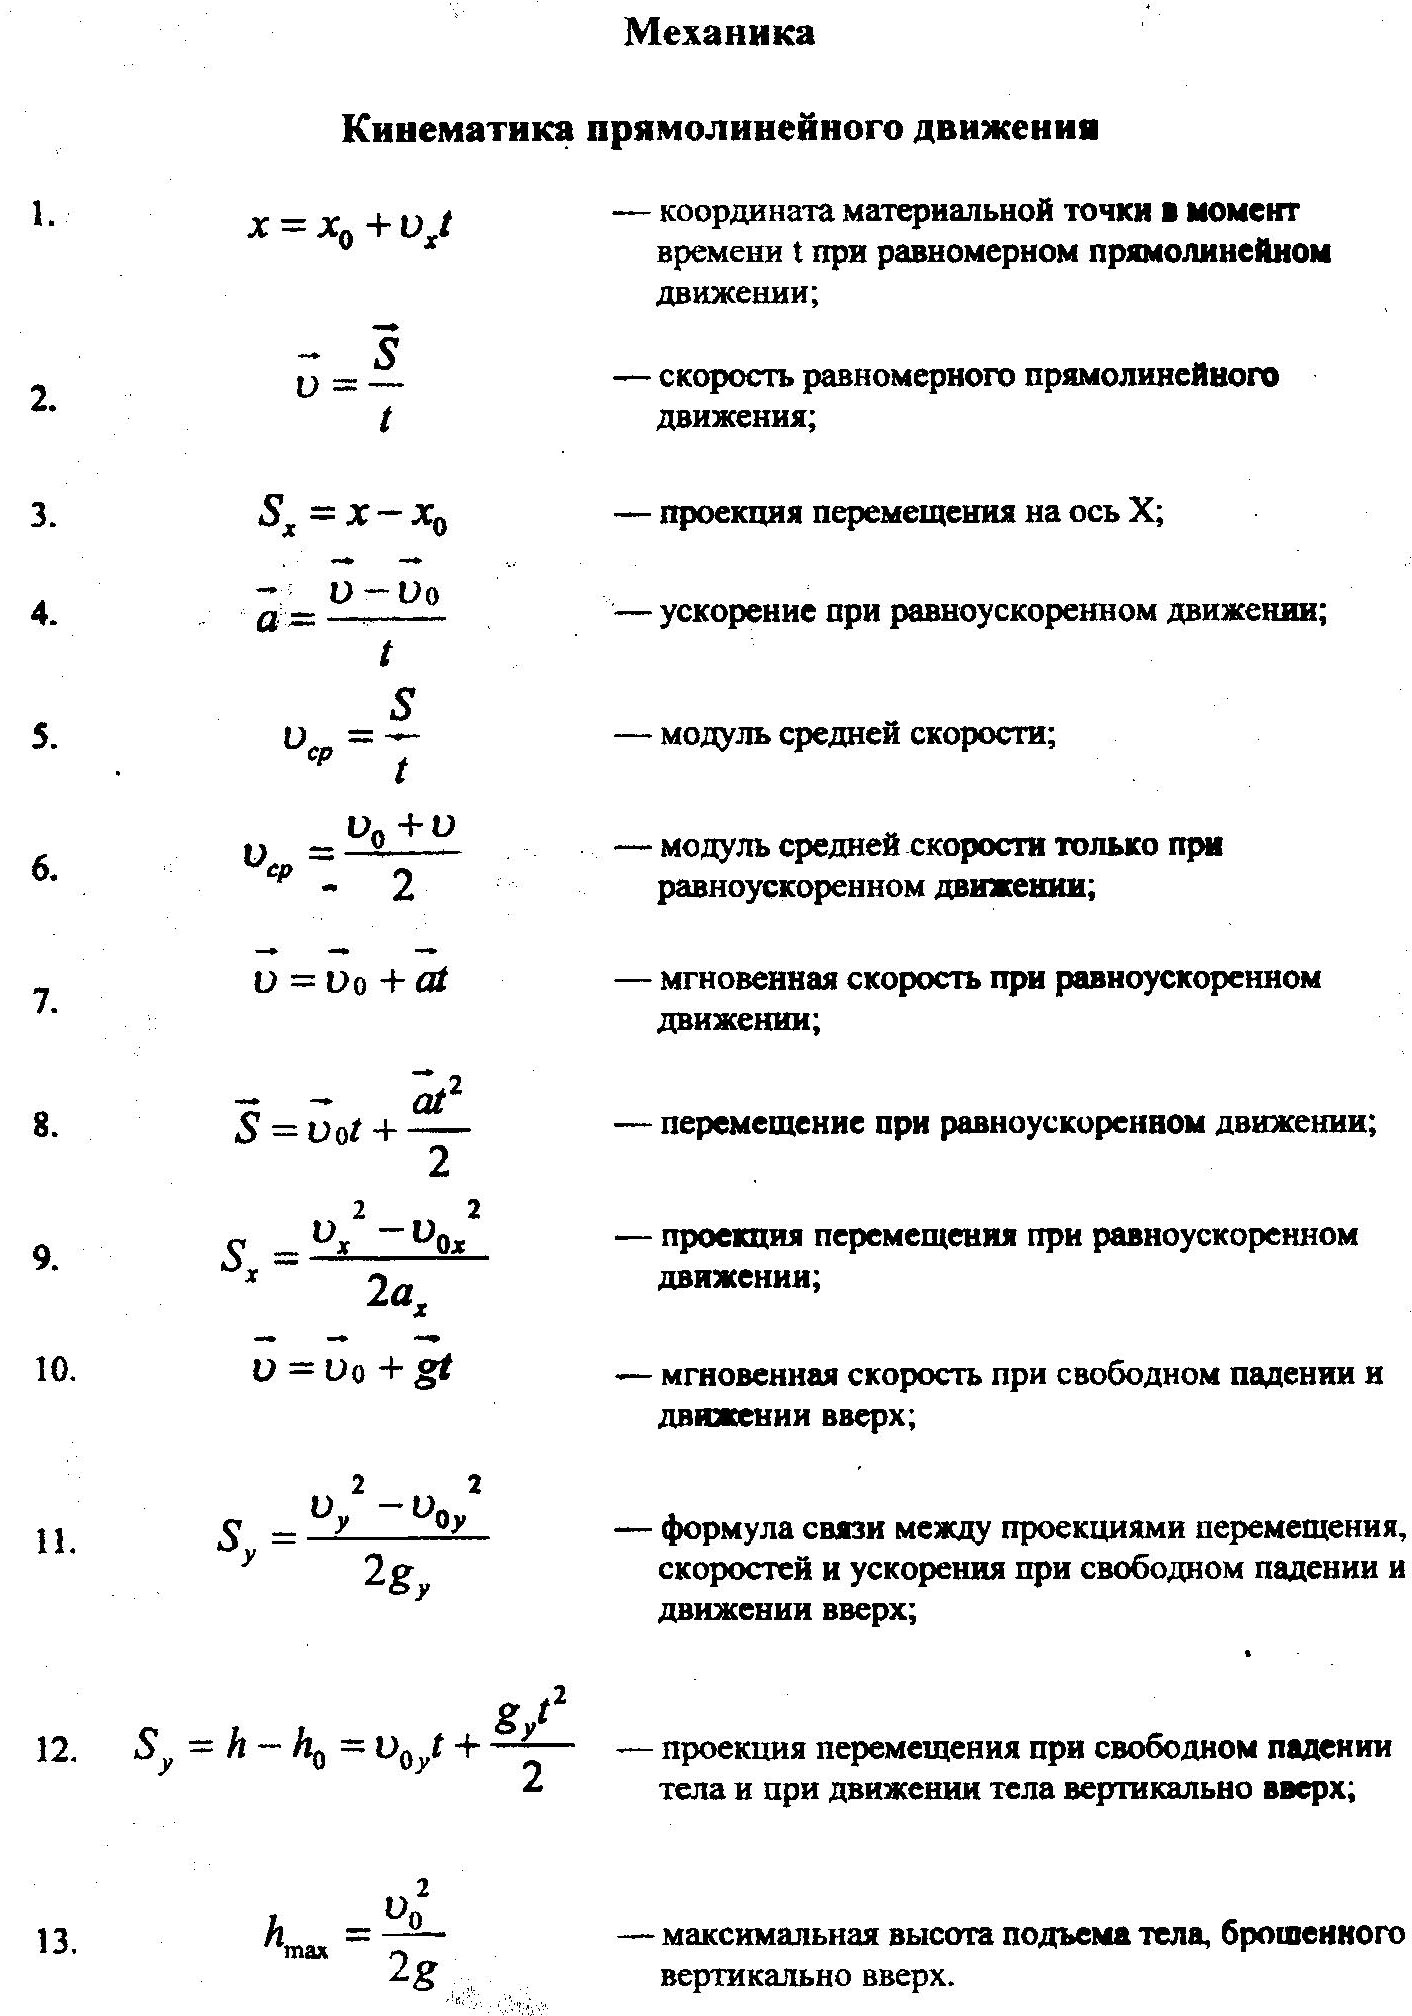 Физика 10 класс кинематика формулы